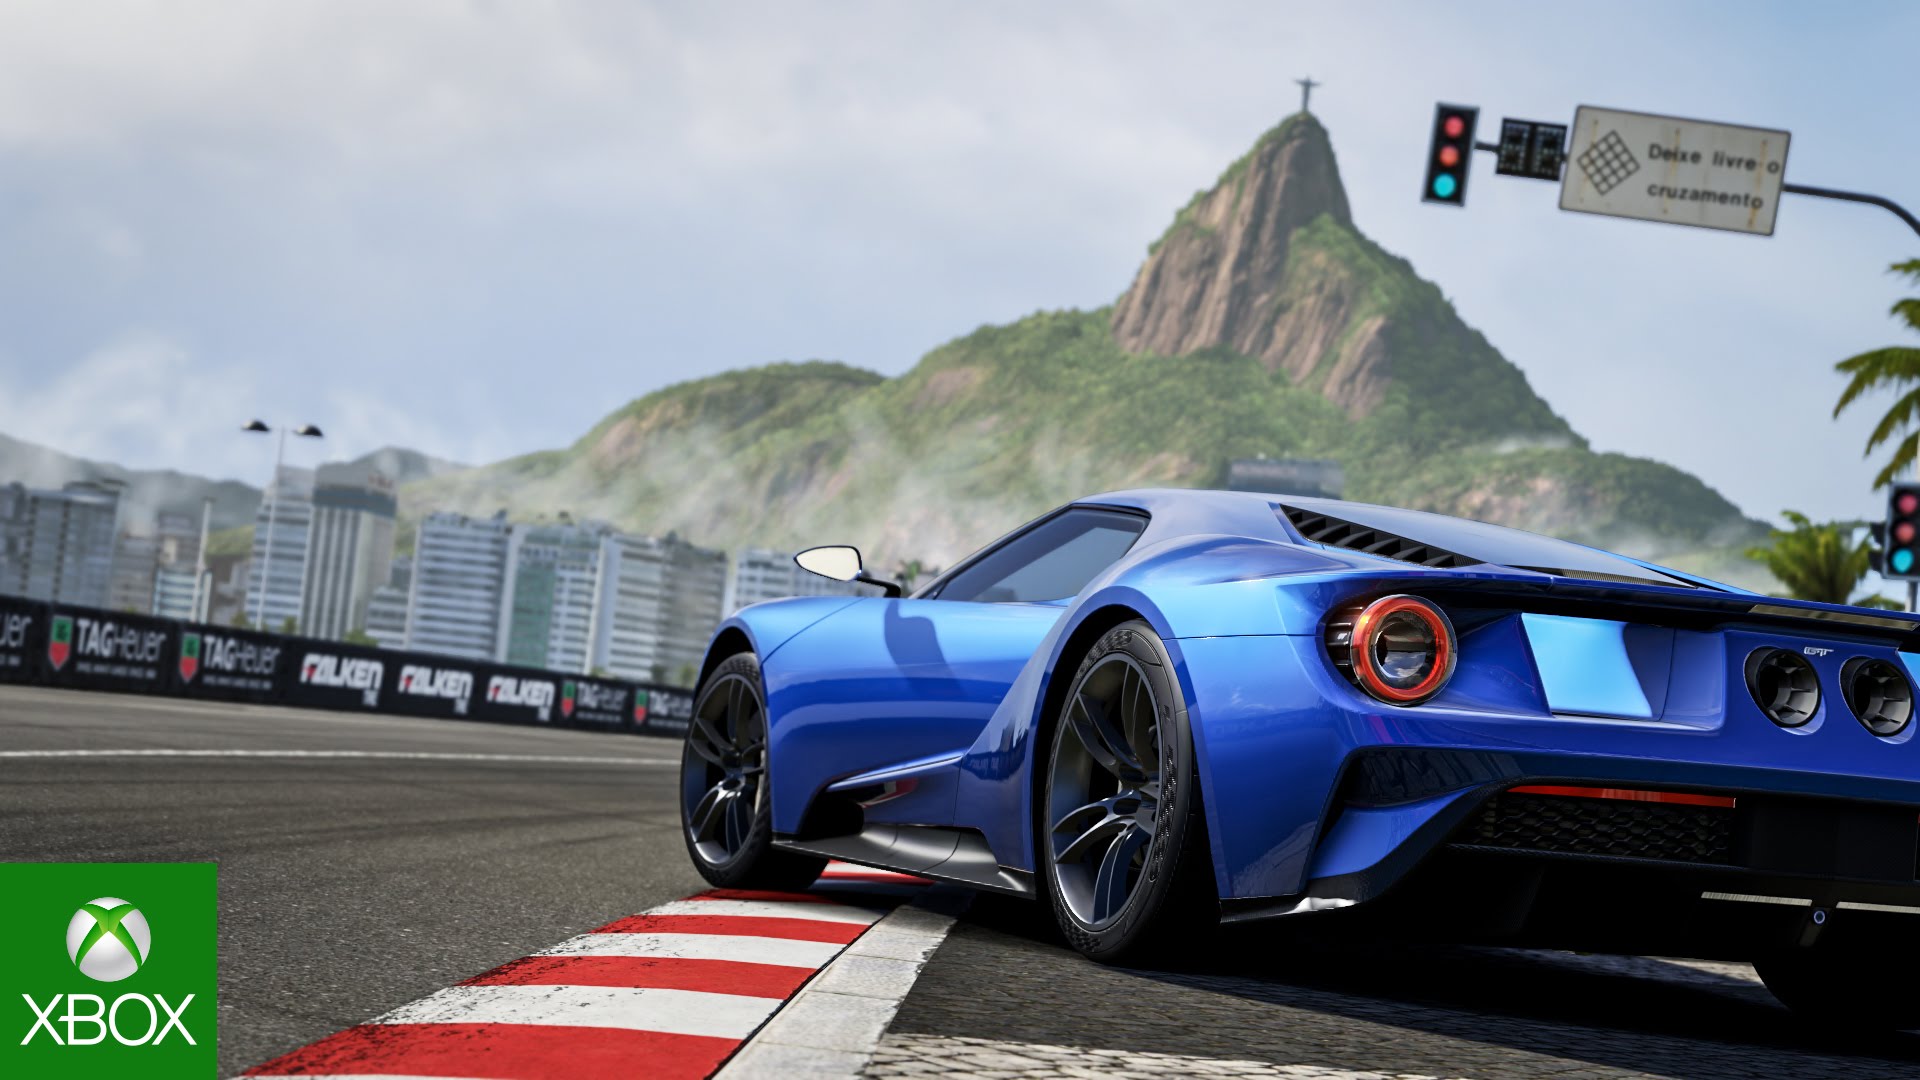 Forza Motorsport 6 poderá ser jogado de graça até o dia 29 de agosto